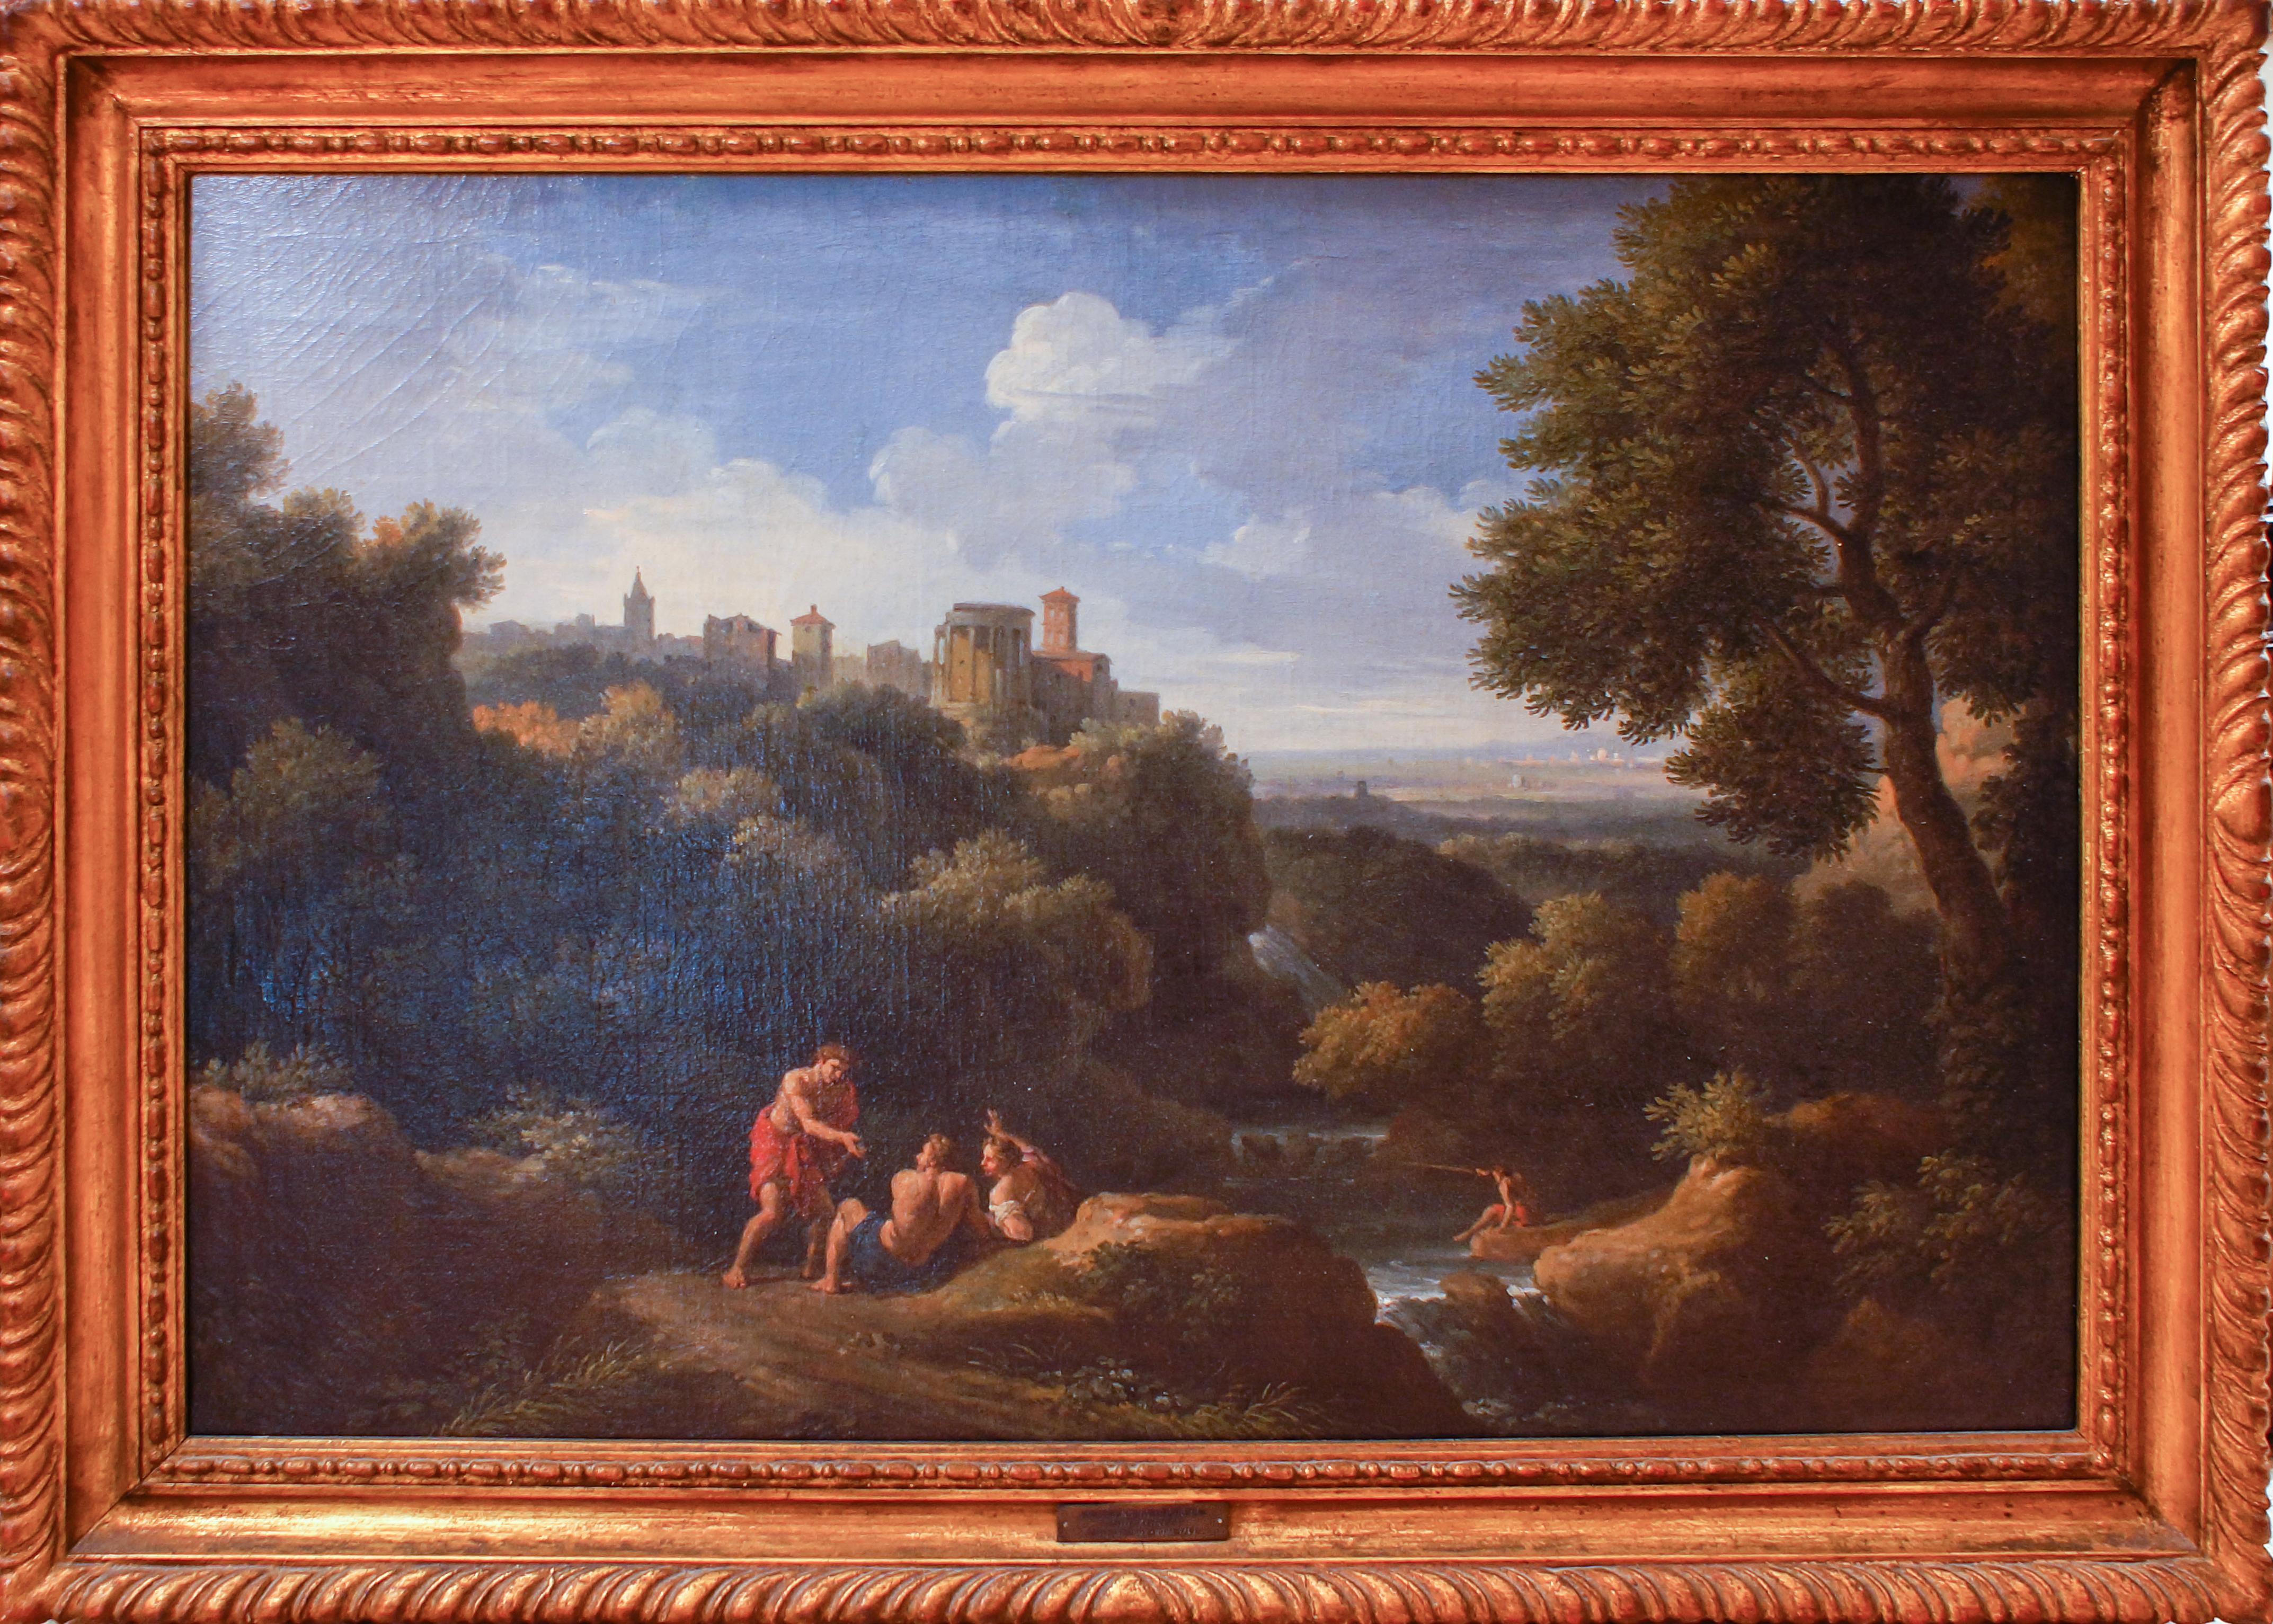 Pair of Roman Landscapes - by J.F. Van Bloemen - 18th Century - Painting by Jan Frans van Bloemen (Orizzonte)